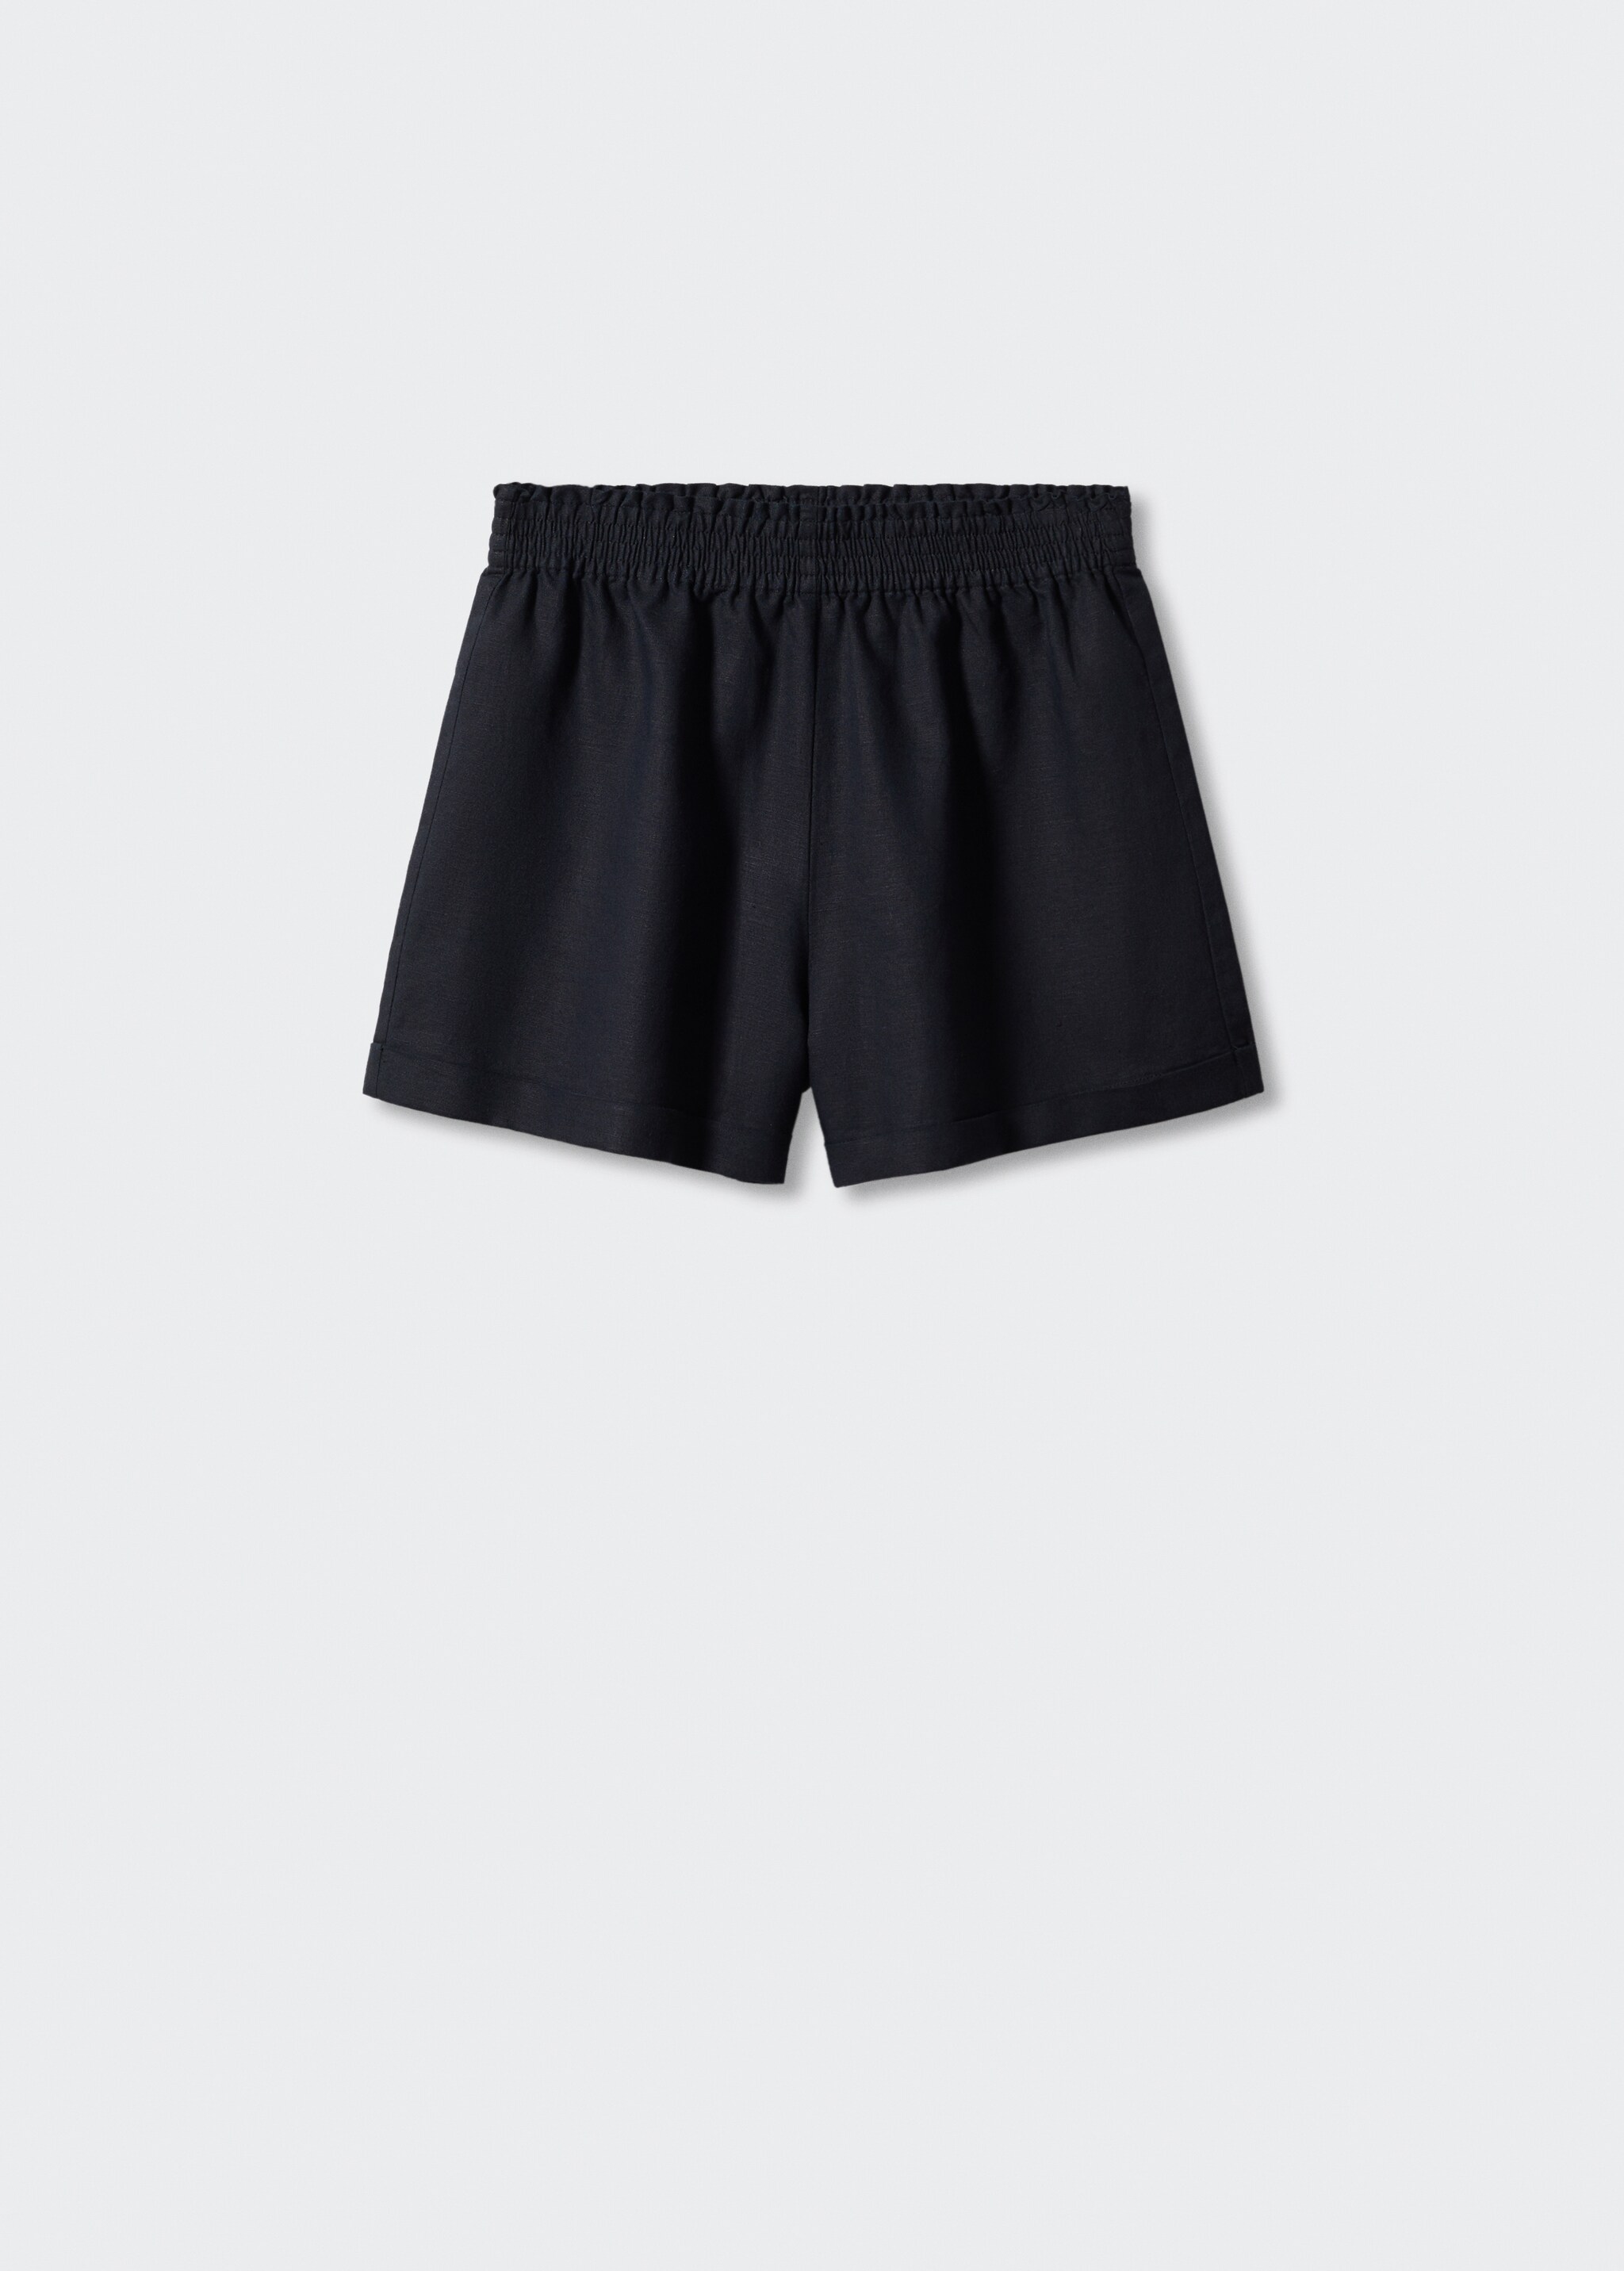 Shorts lino cintura elástica - Artículo sin modelo